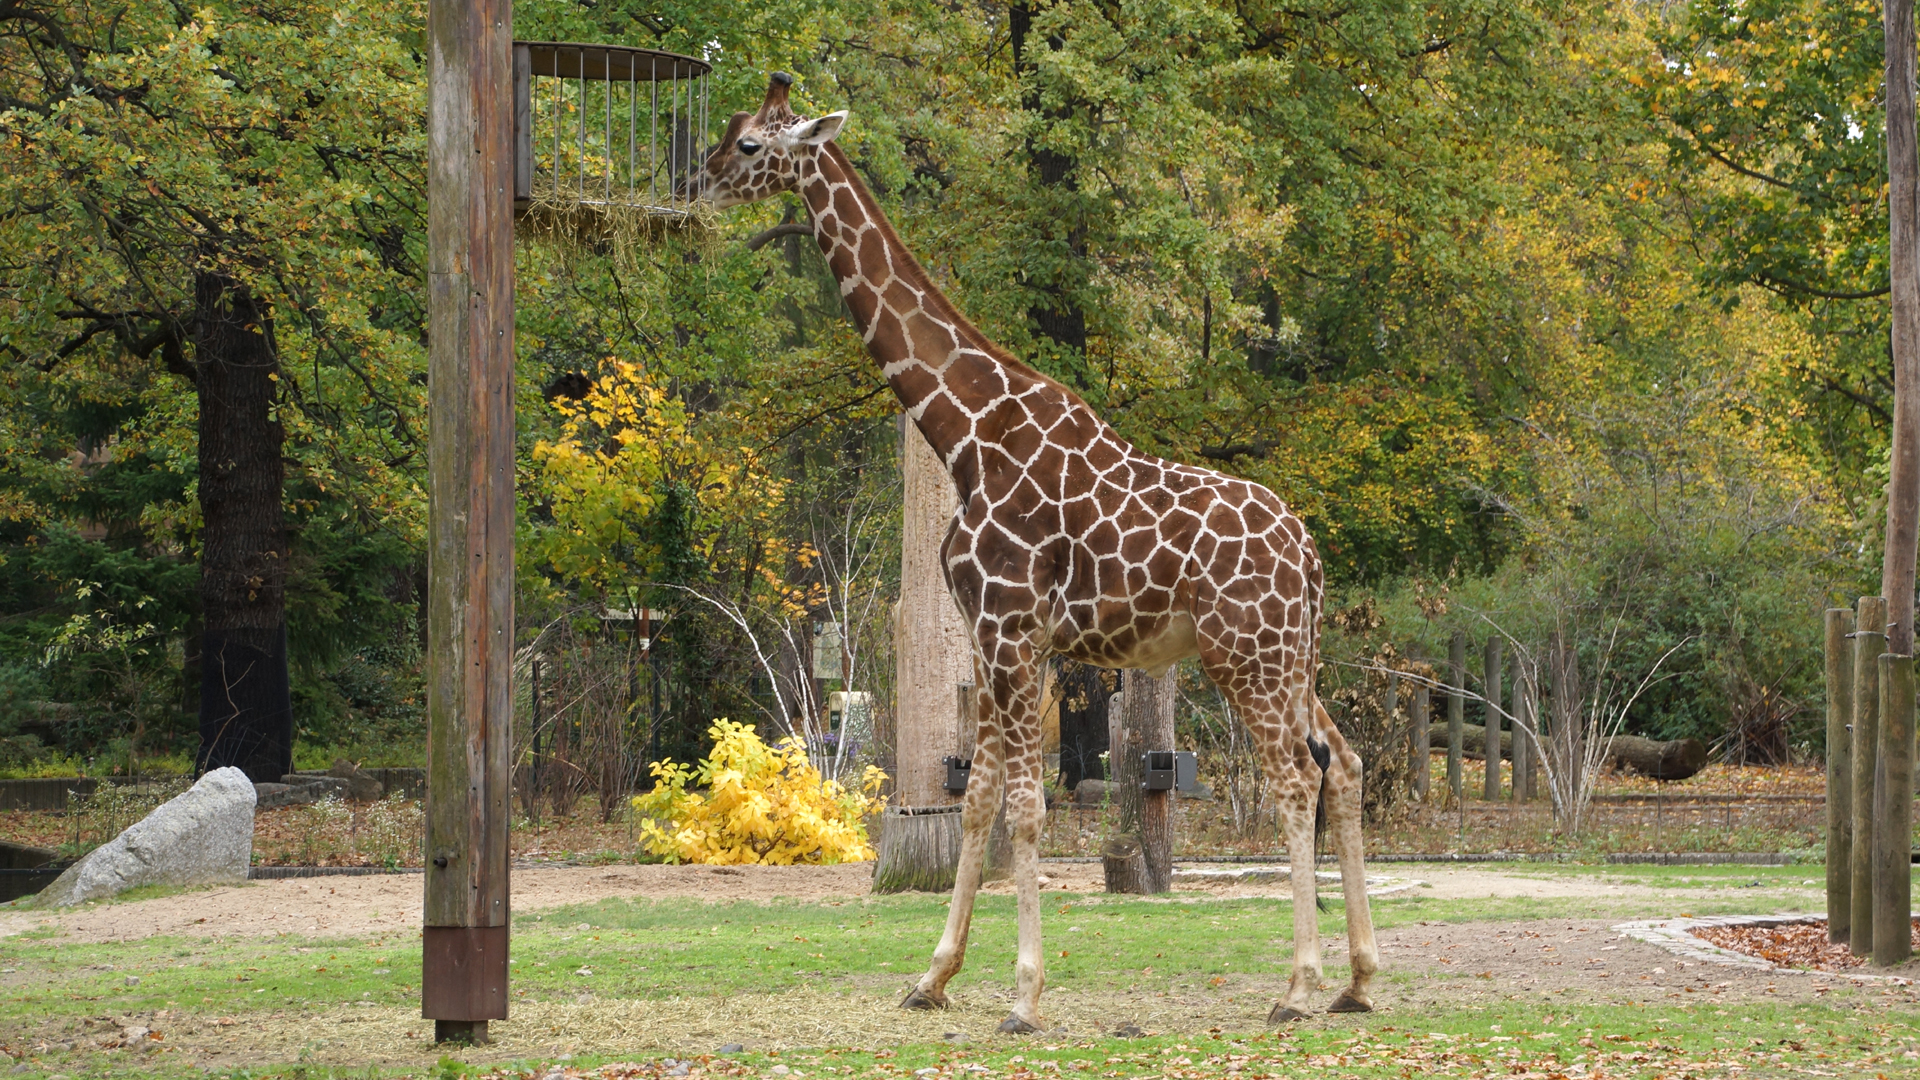 Fotostrecke Zoo Schönbrunn, Giraffe